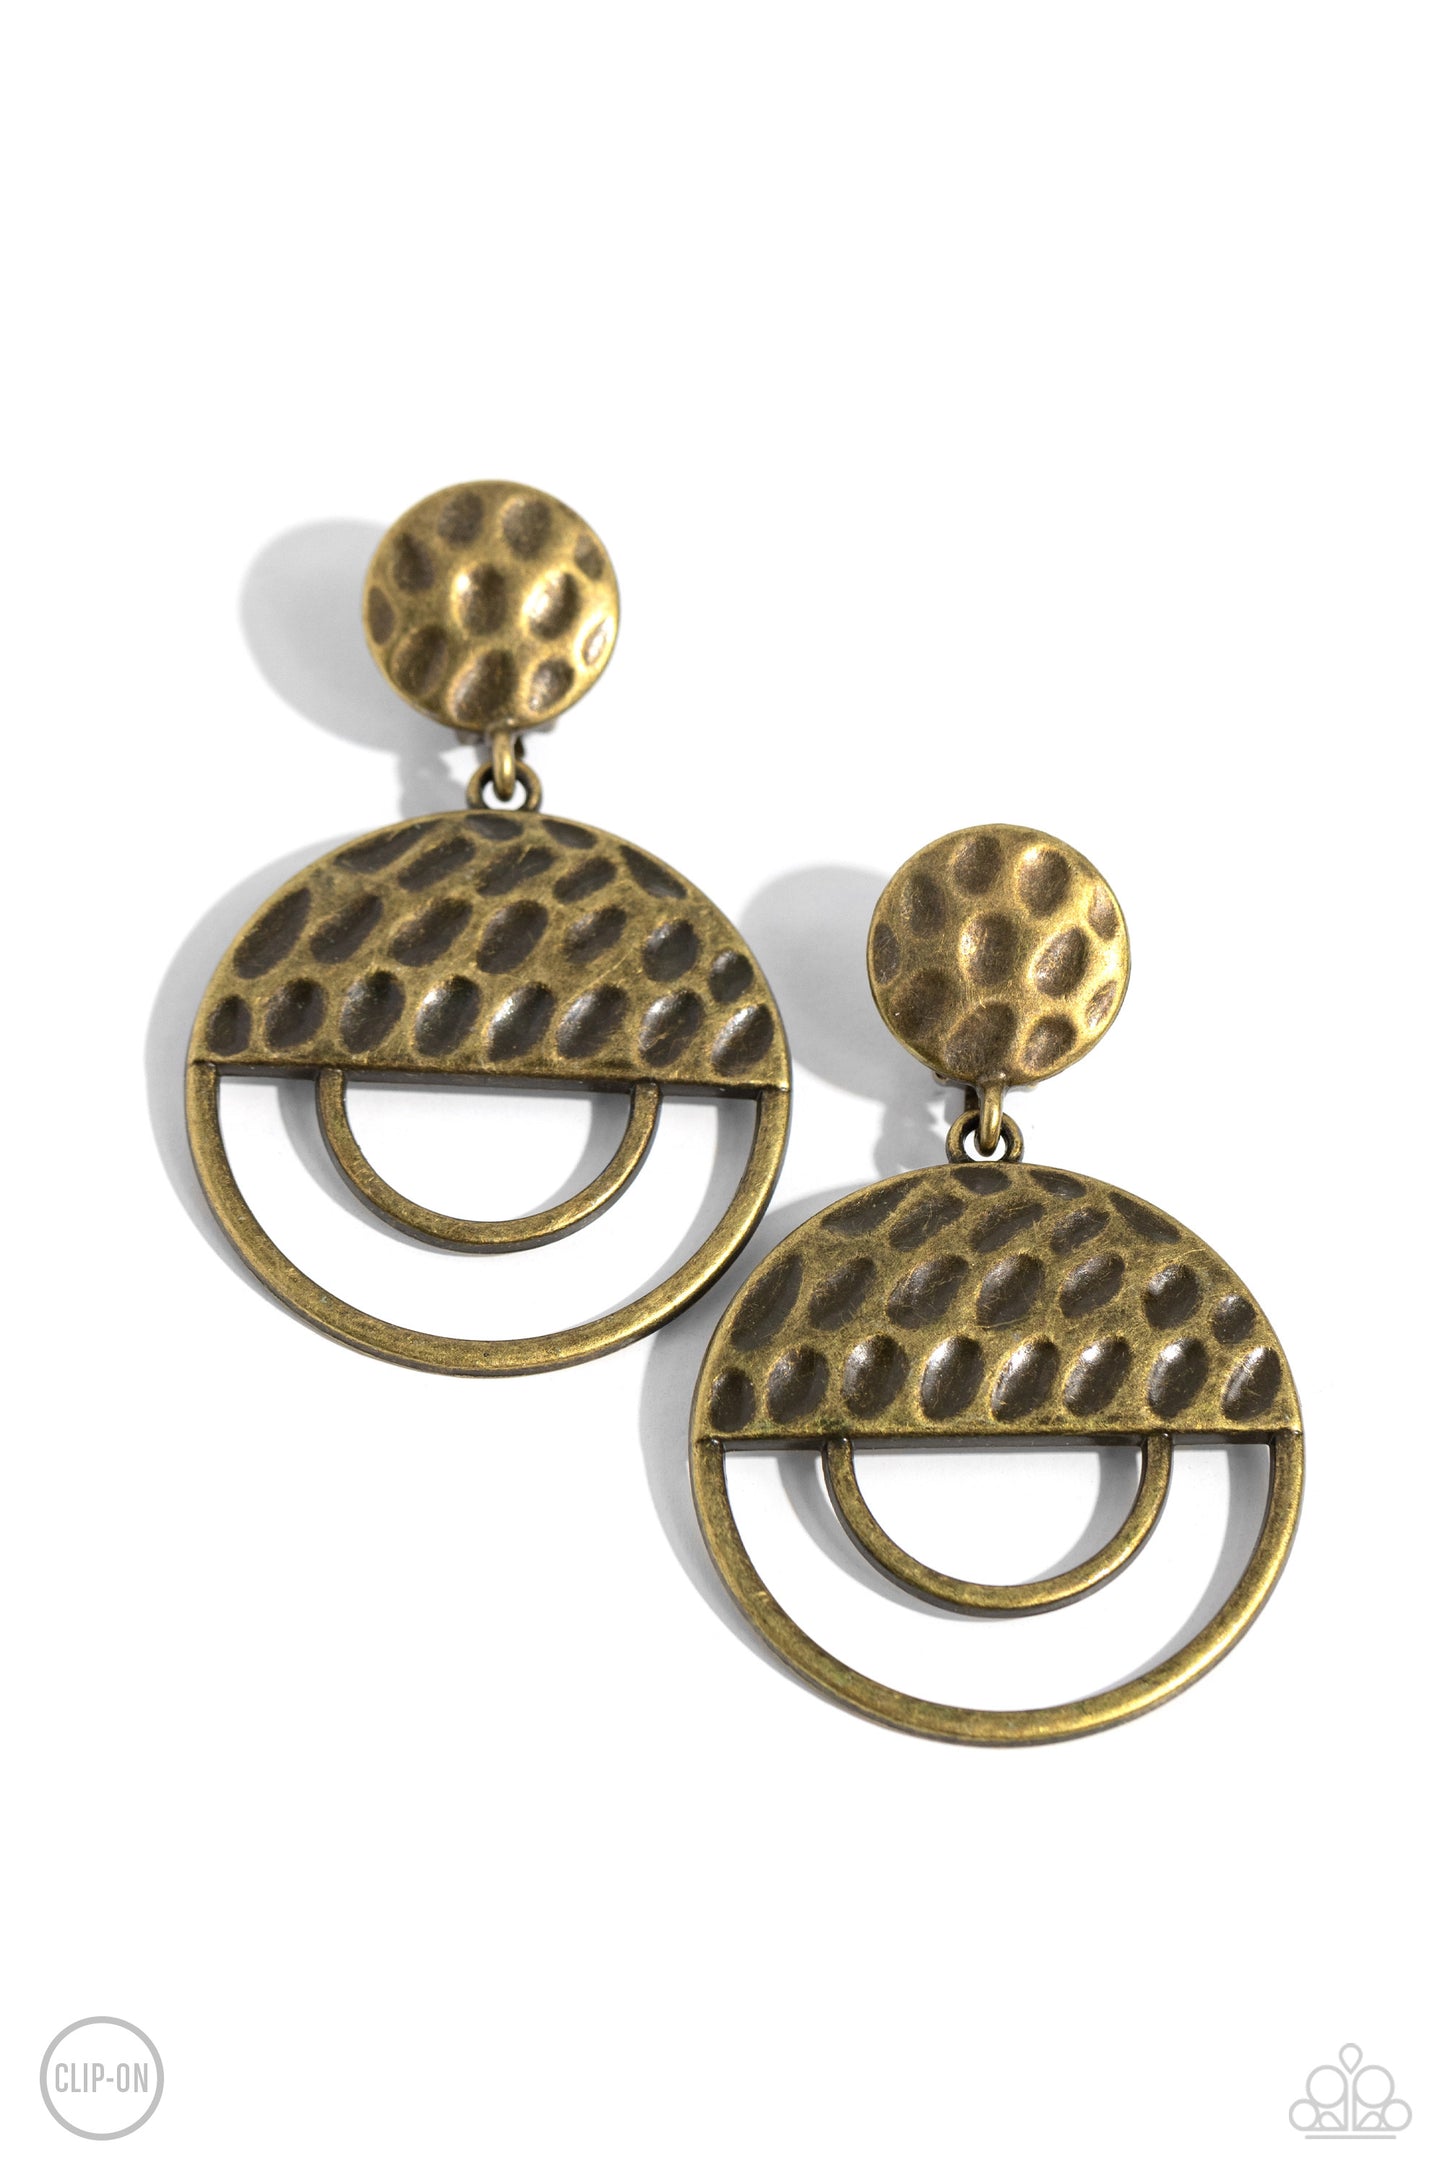 Southern Souvenir - Brass Earring